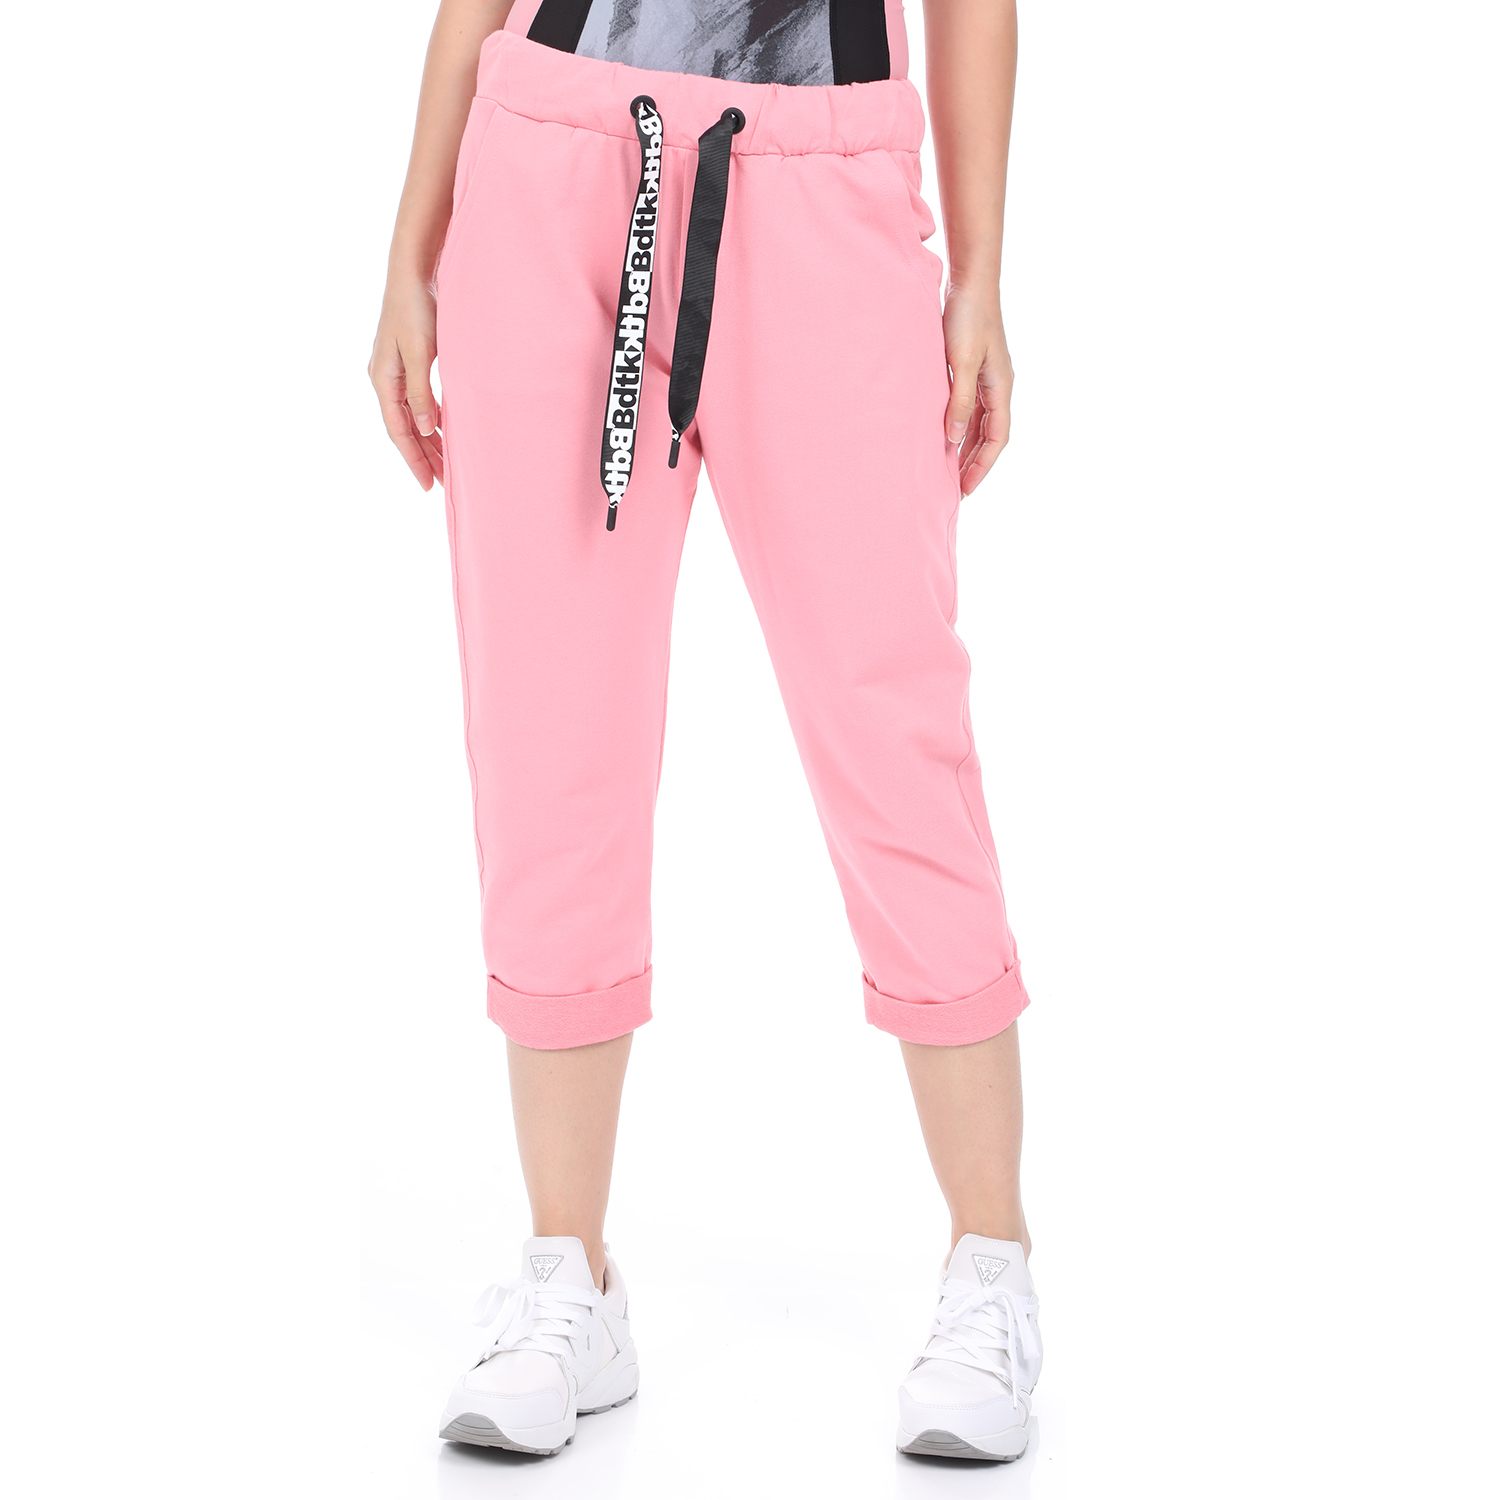 Γυναικεία/Ρούχα/Παντελόνια/Φόρμες BODYTALK - Γυναικείο παντελόνι φόρμας κάπρι BODYTALK REGULAR ροζ